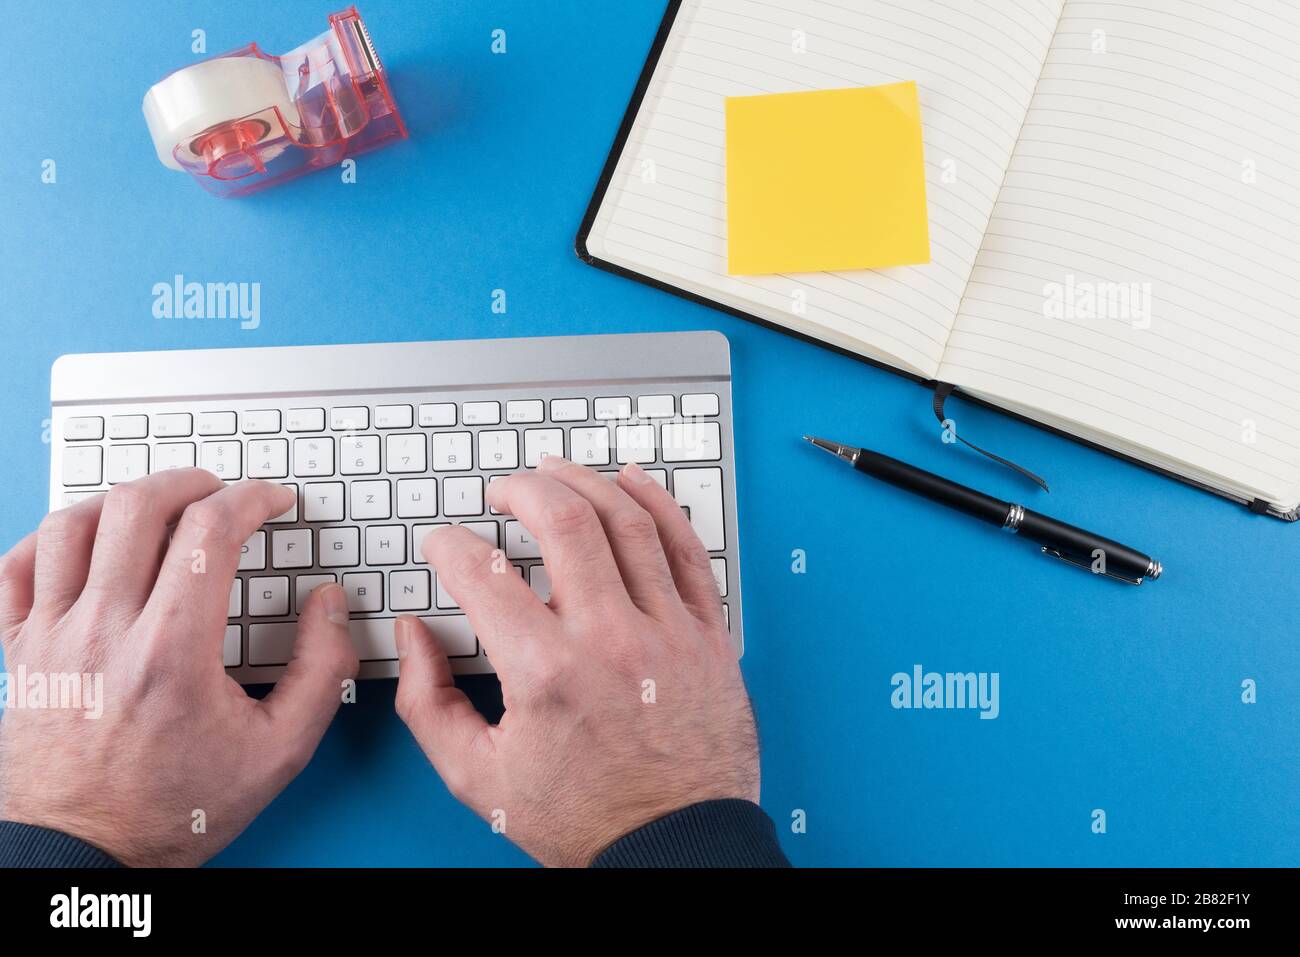 vista dall'alto della persona che digita sulla tastiera del computer sullo sfondo blu della scrivania con notebook aperto Foto Stock